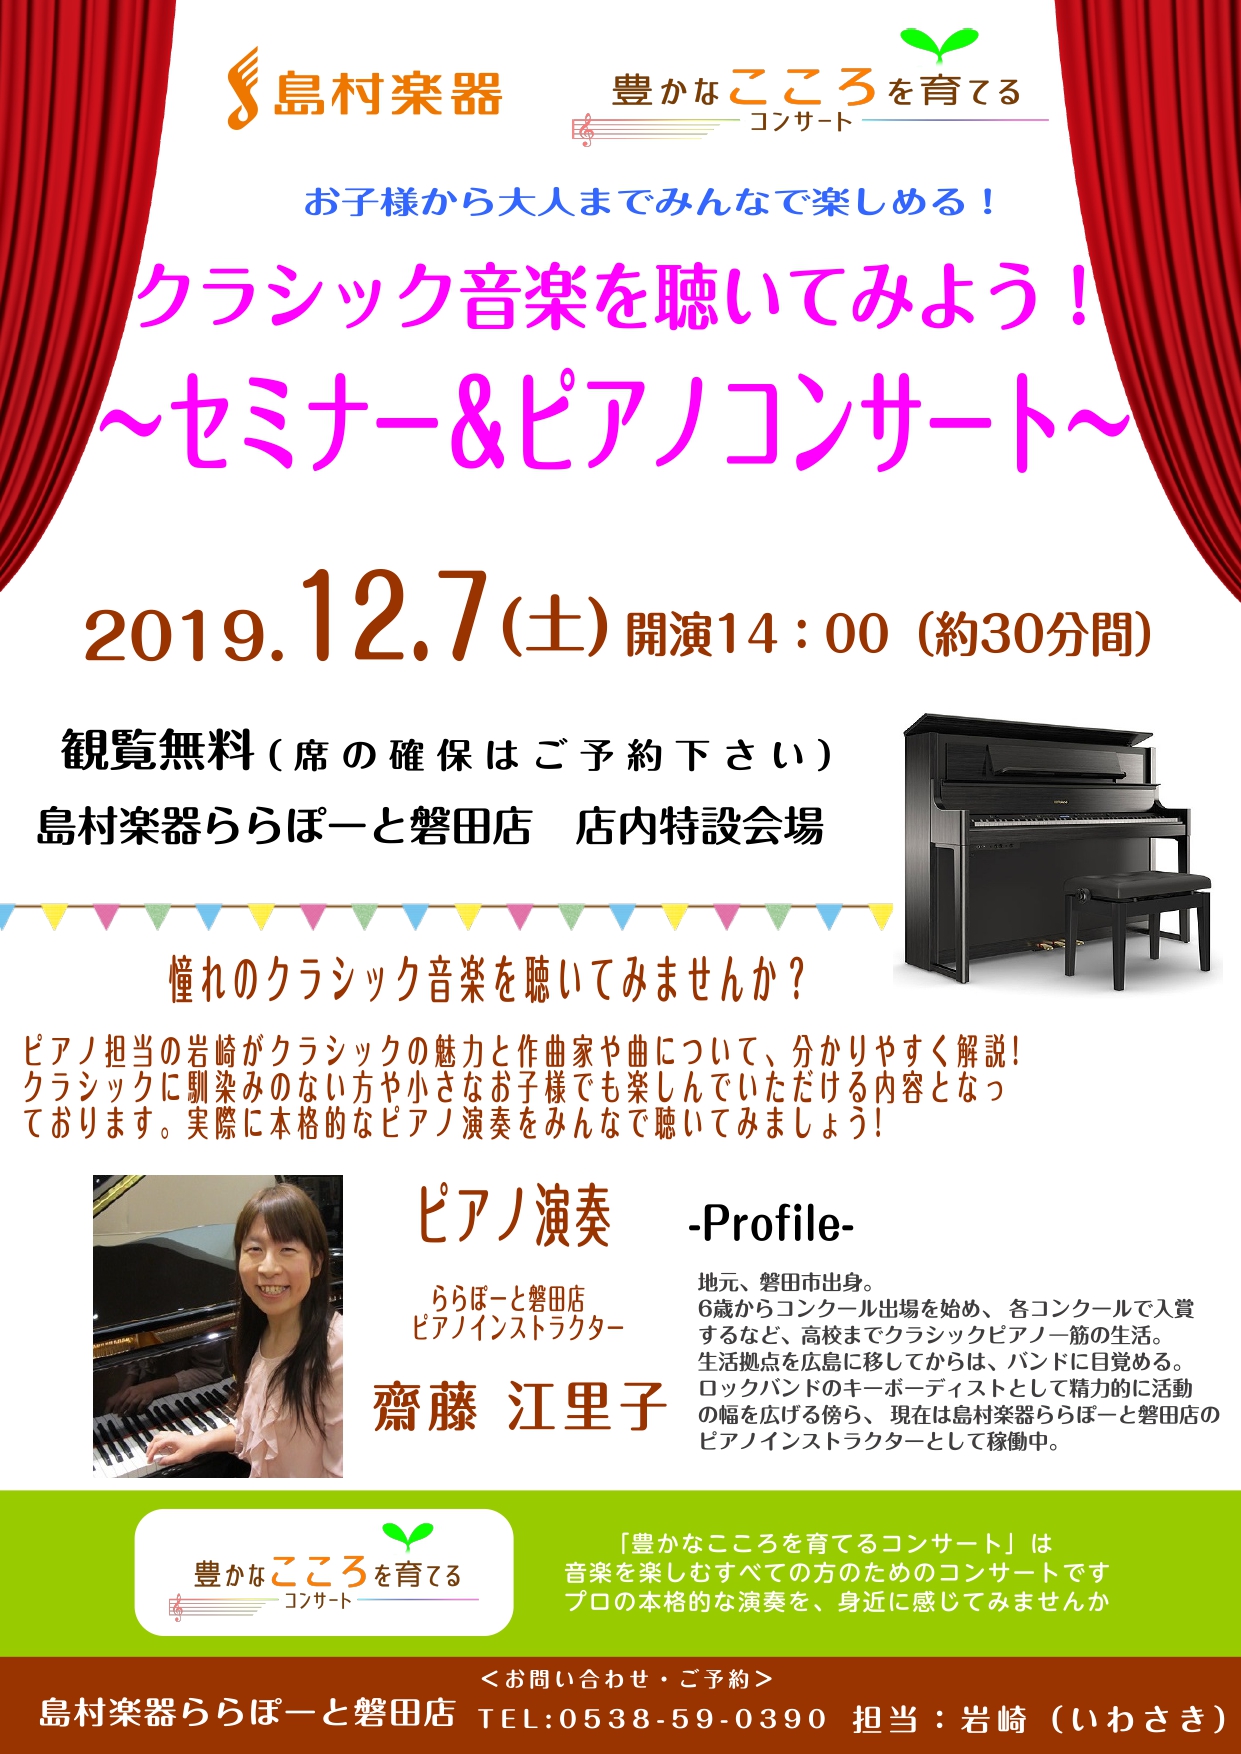 【 12月7日(土) 】クラシック音楽を聴いてみよう！～セミナー&ピアノコンサート～開催致します！